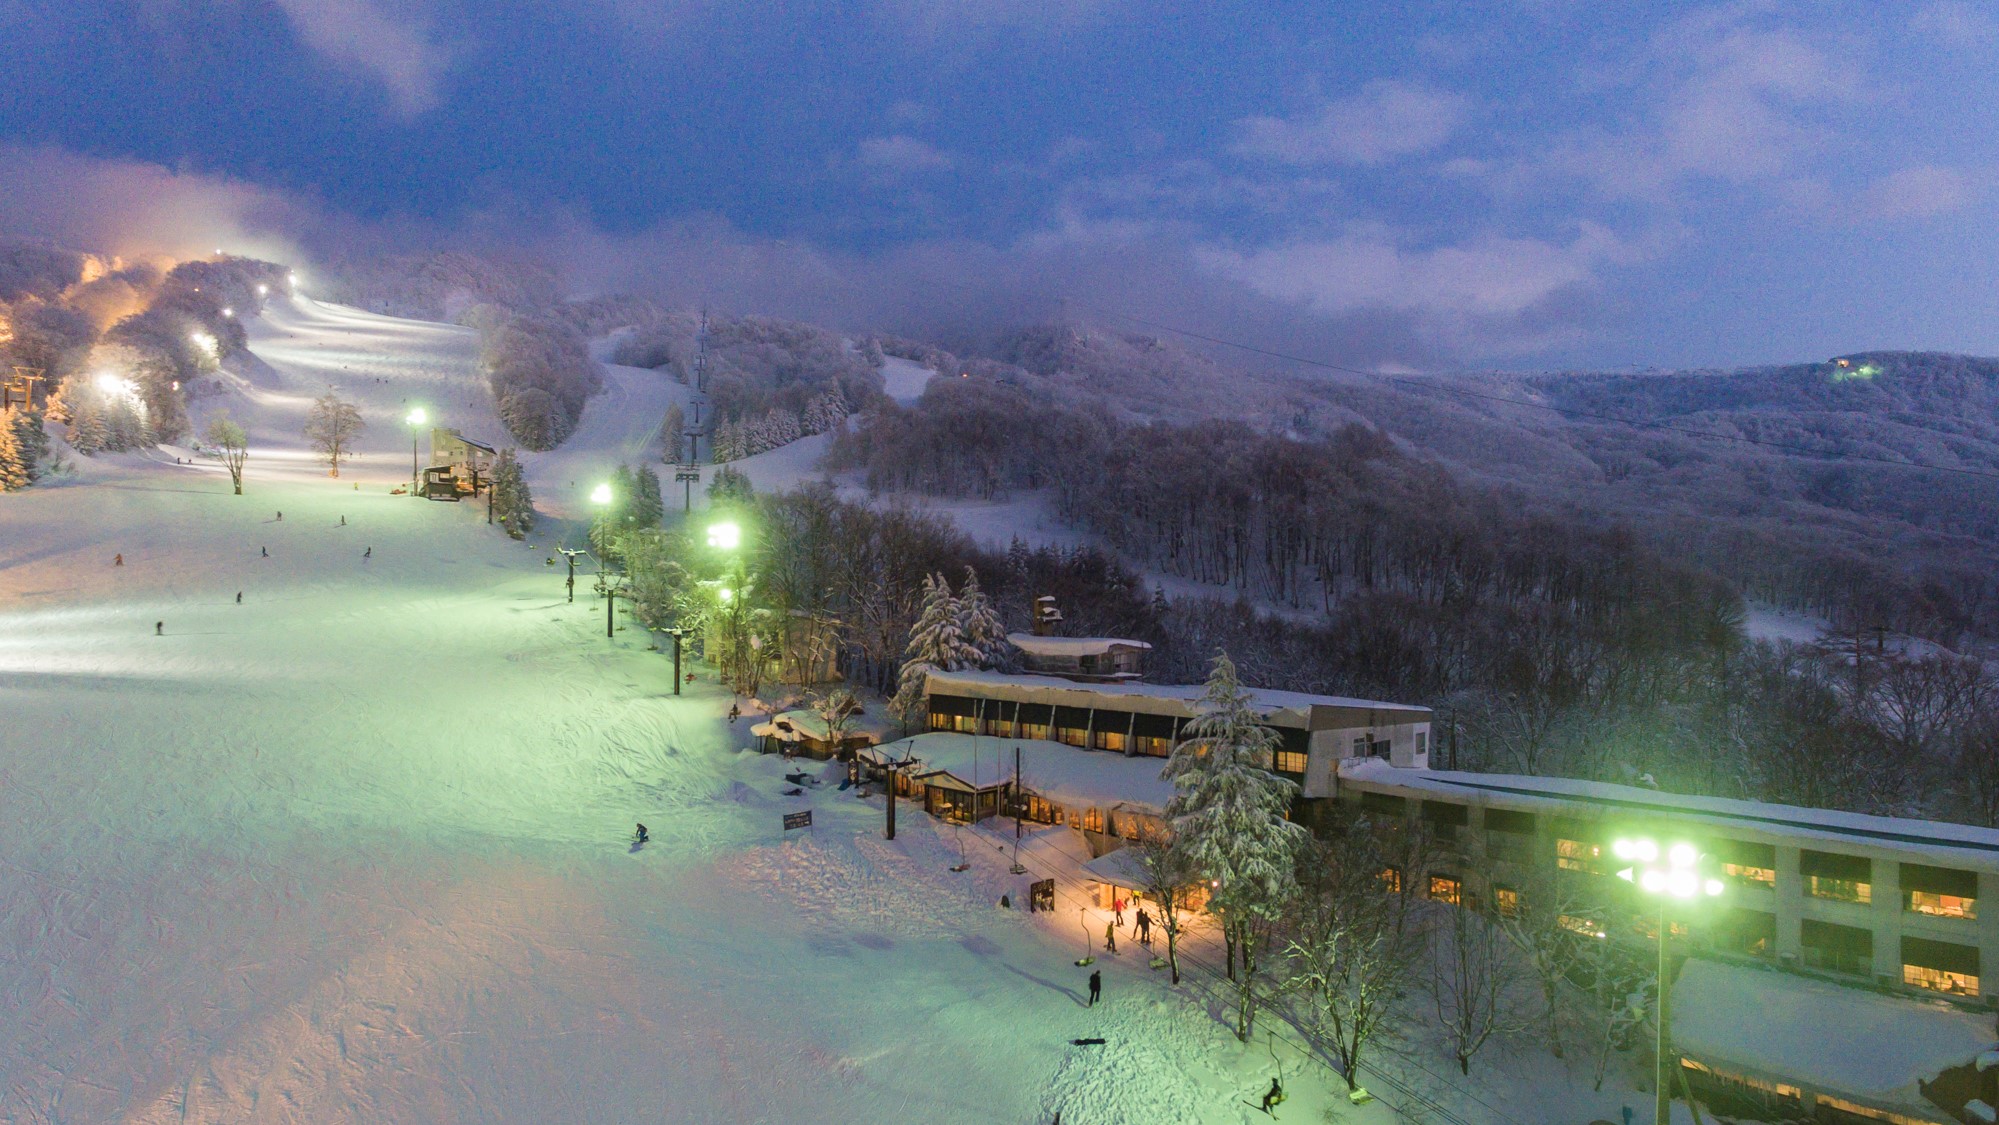 【蔵王温泉スキー場】ナイターで夜もスノーレジャー満喫